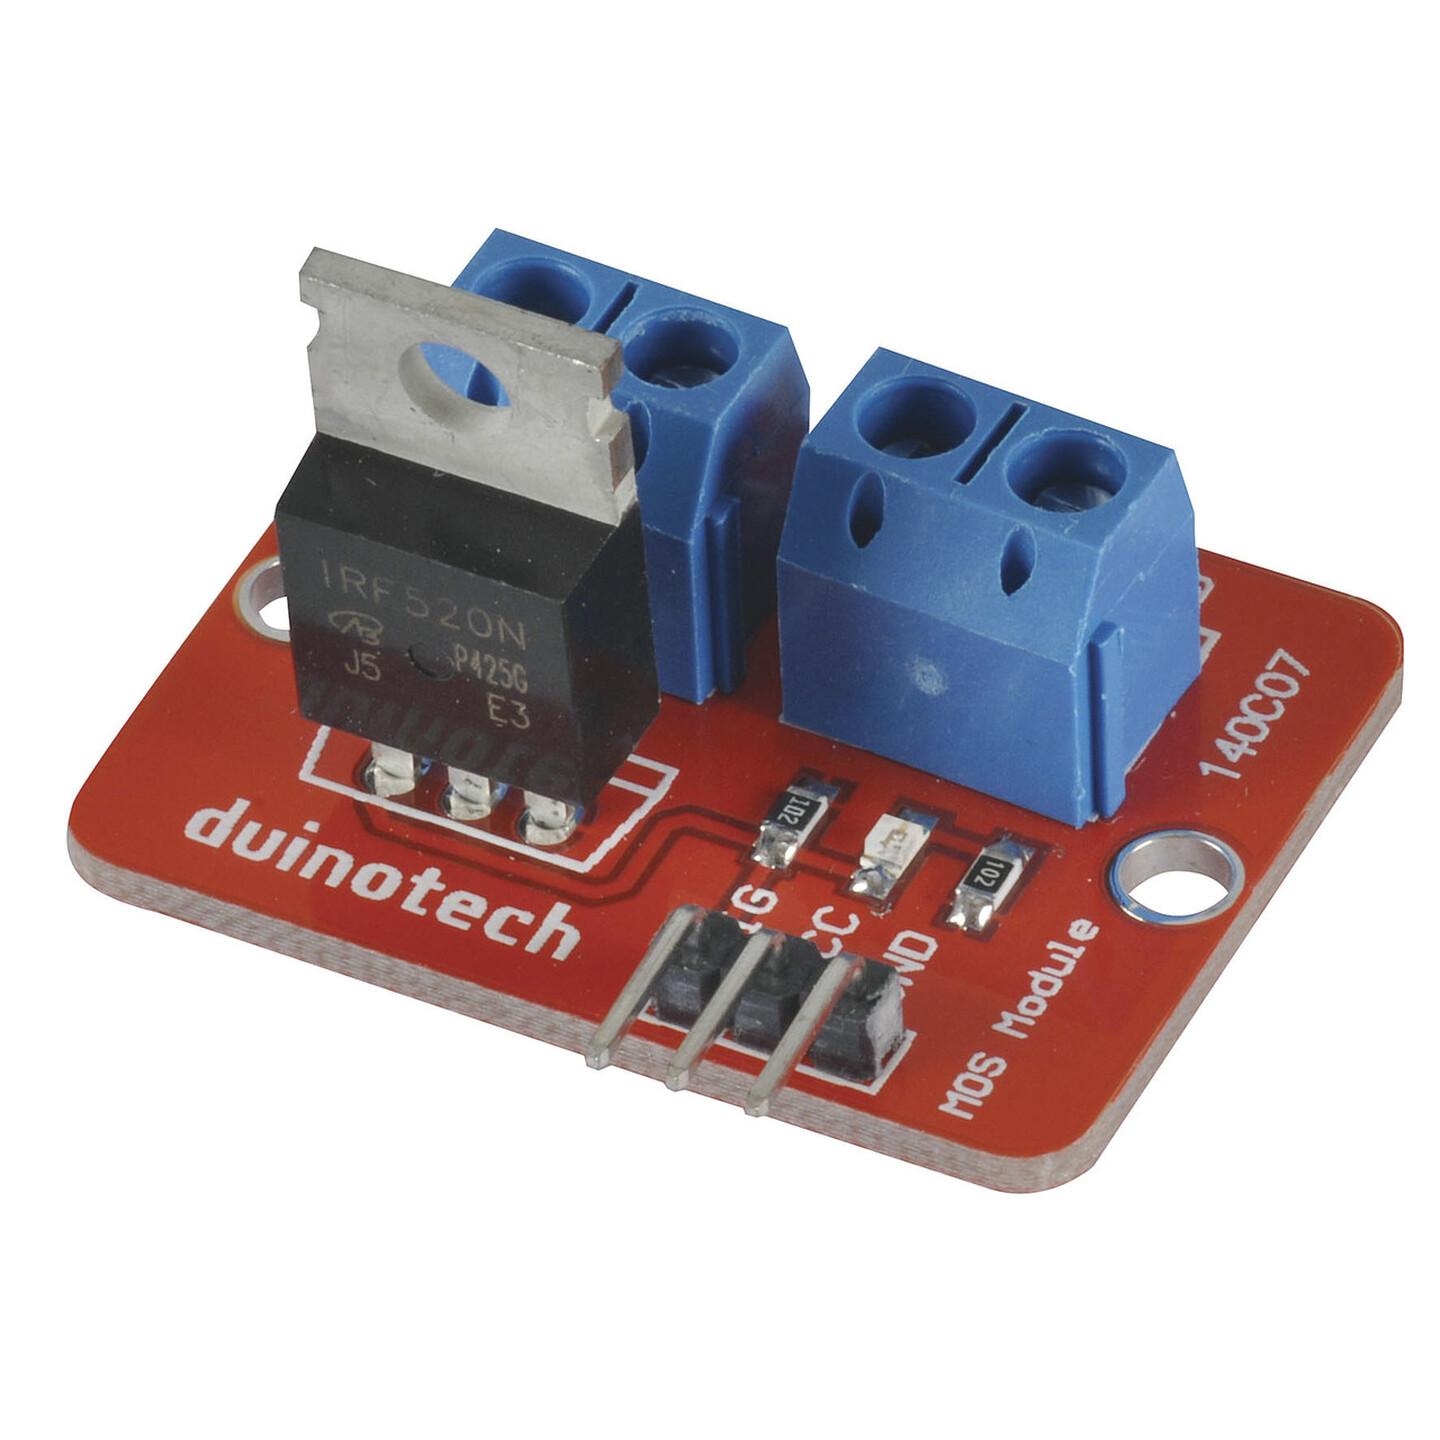 Duinotech Arduino Compatible 24V 5A MOS Driver Module